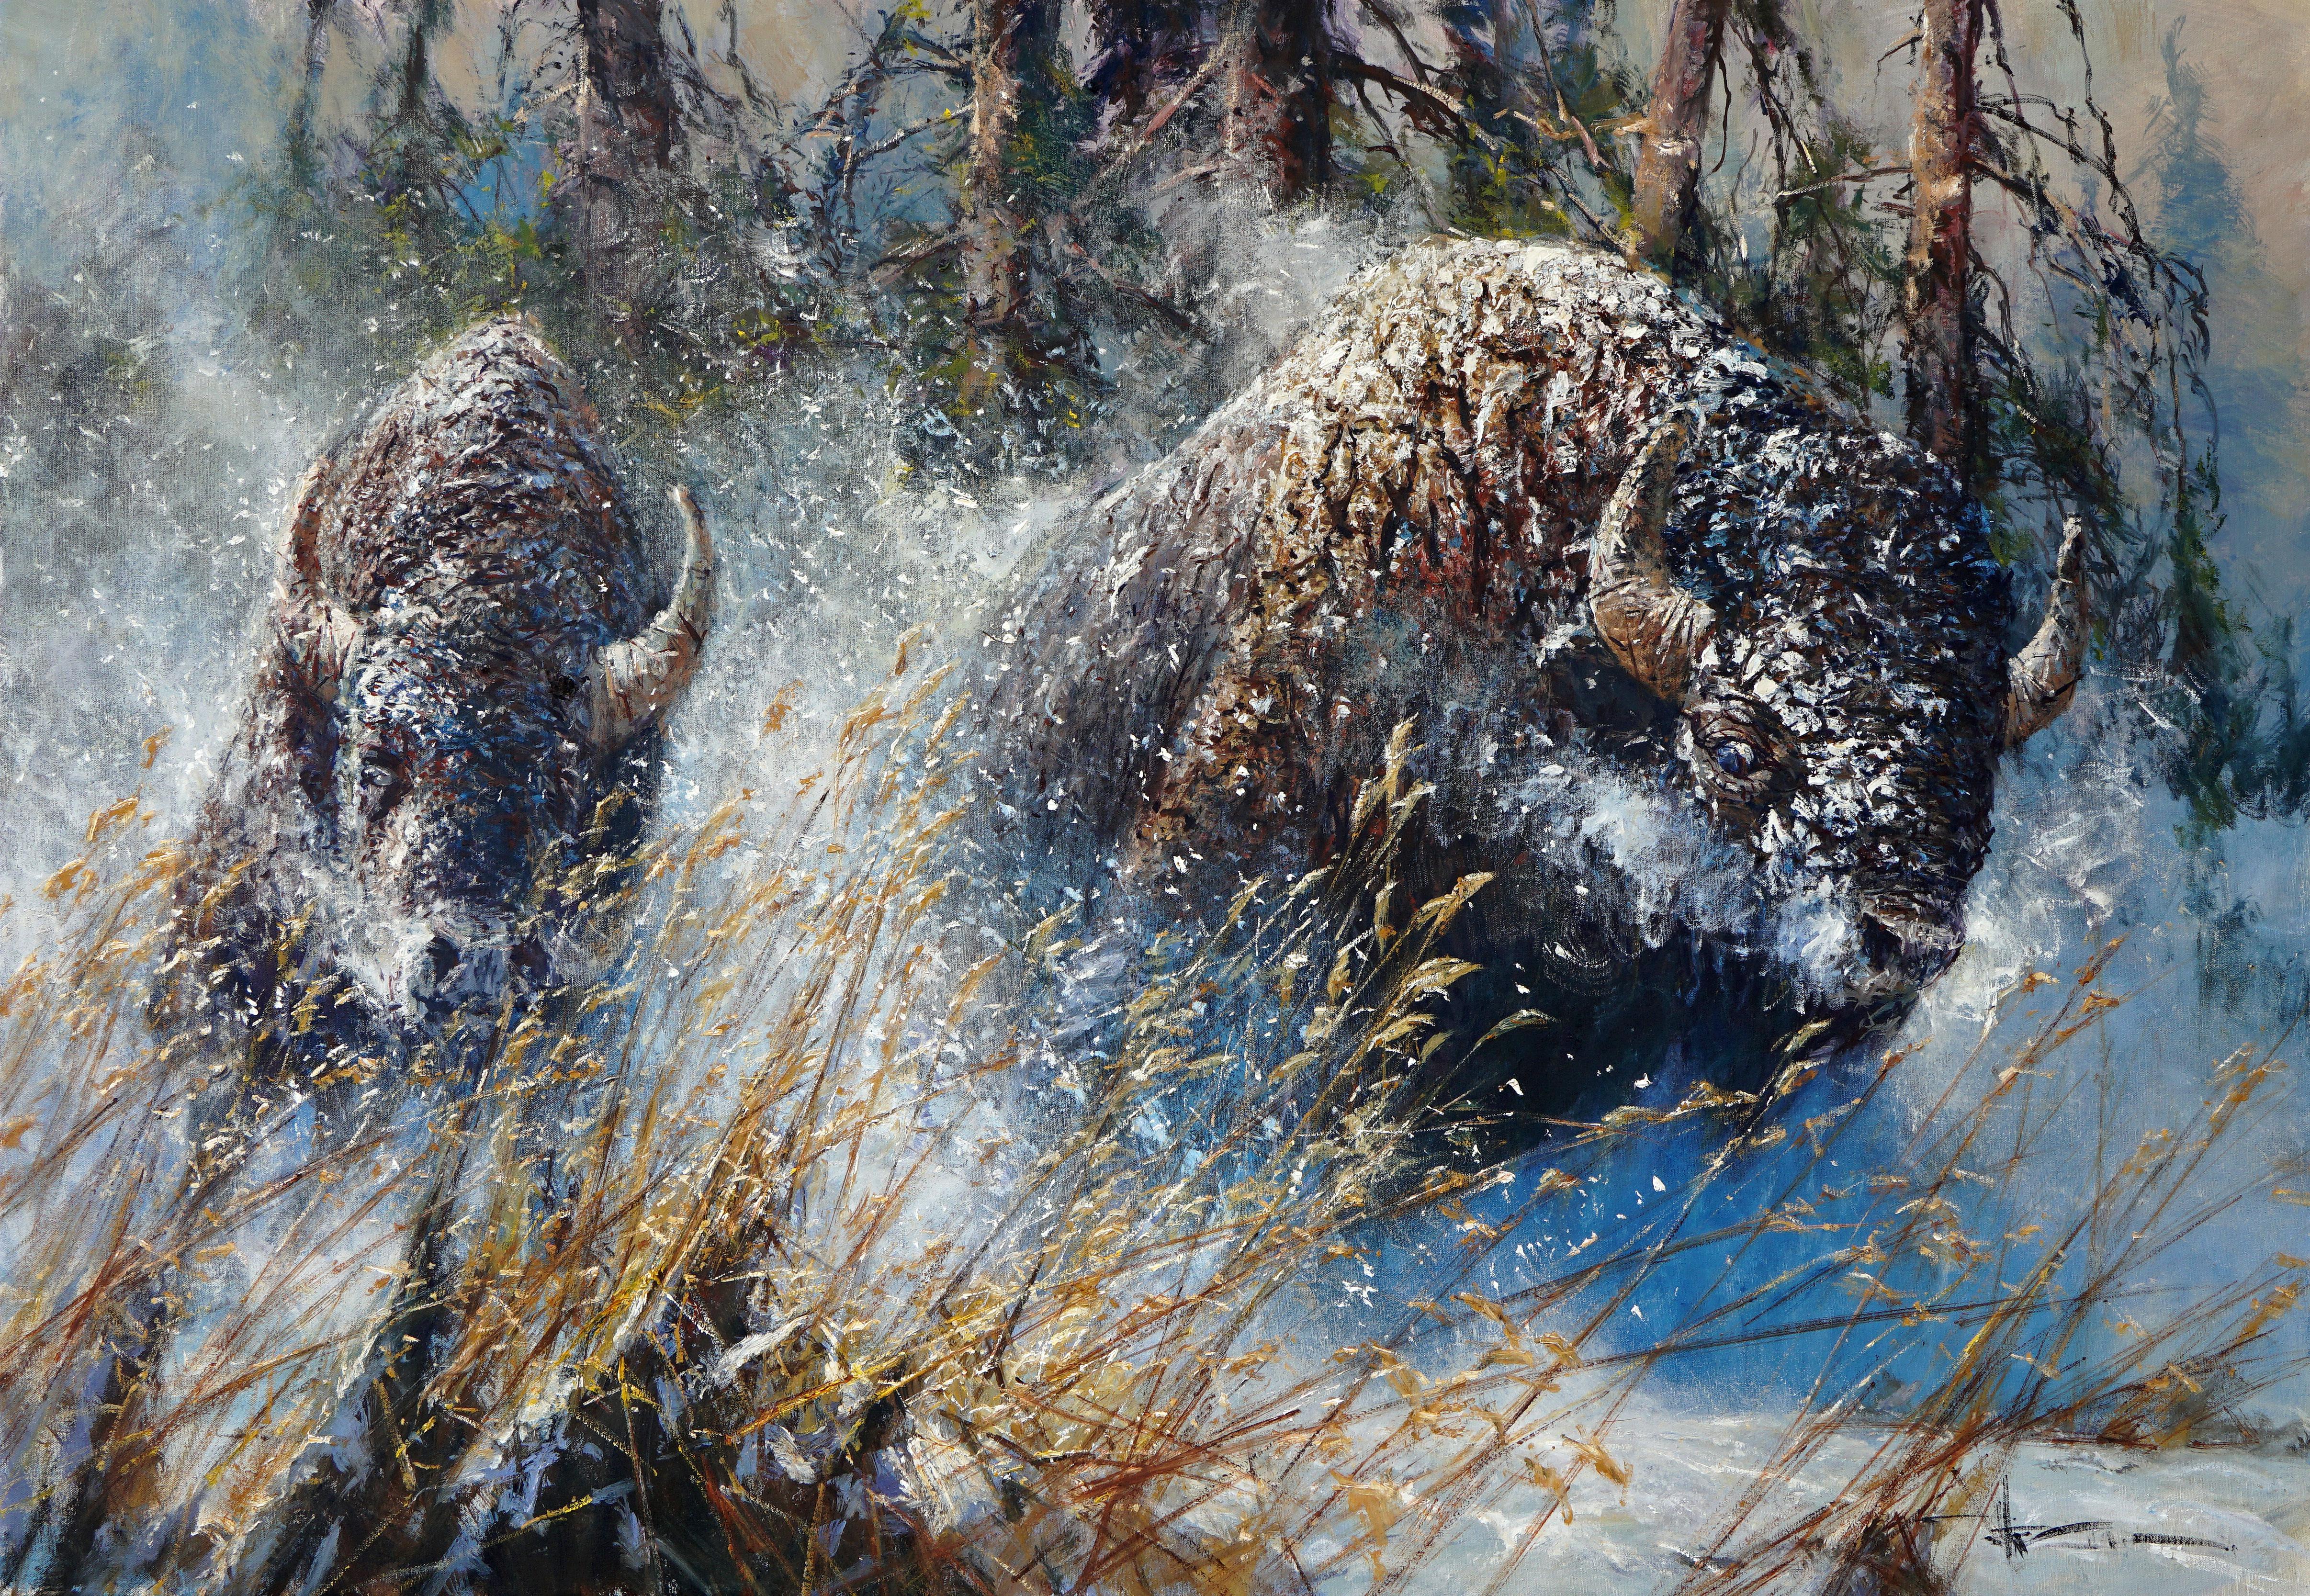 "Startled", Robert Hagan, 42x60, Oil on Canvas, Western, Impressionism, Buffalo